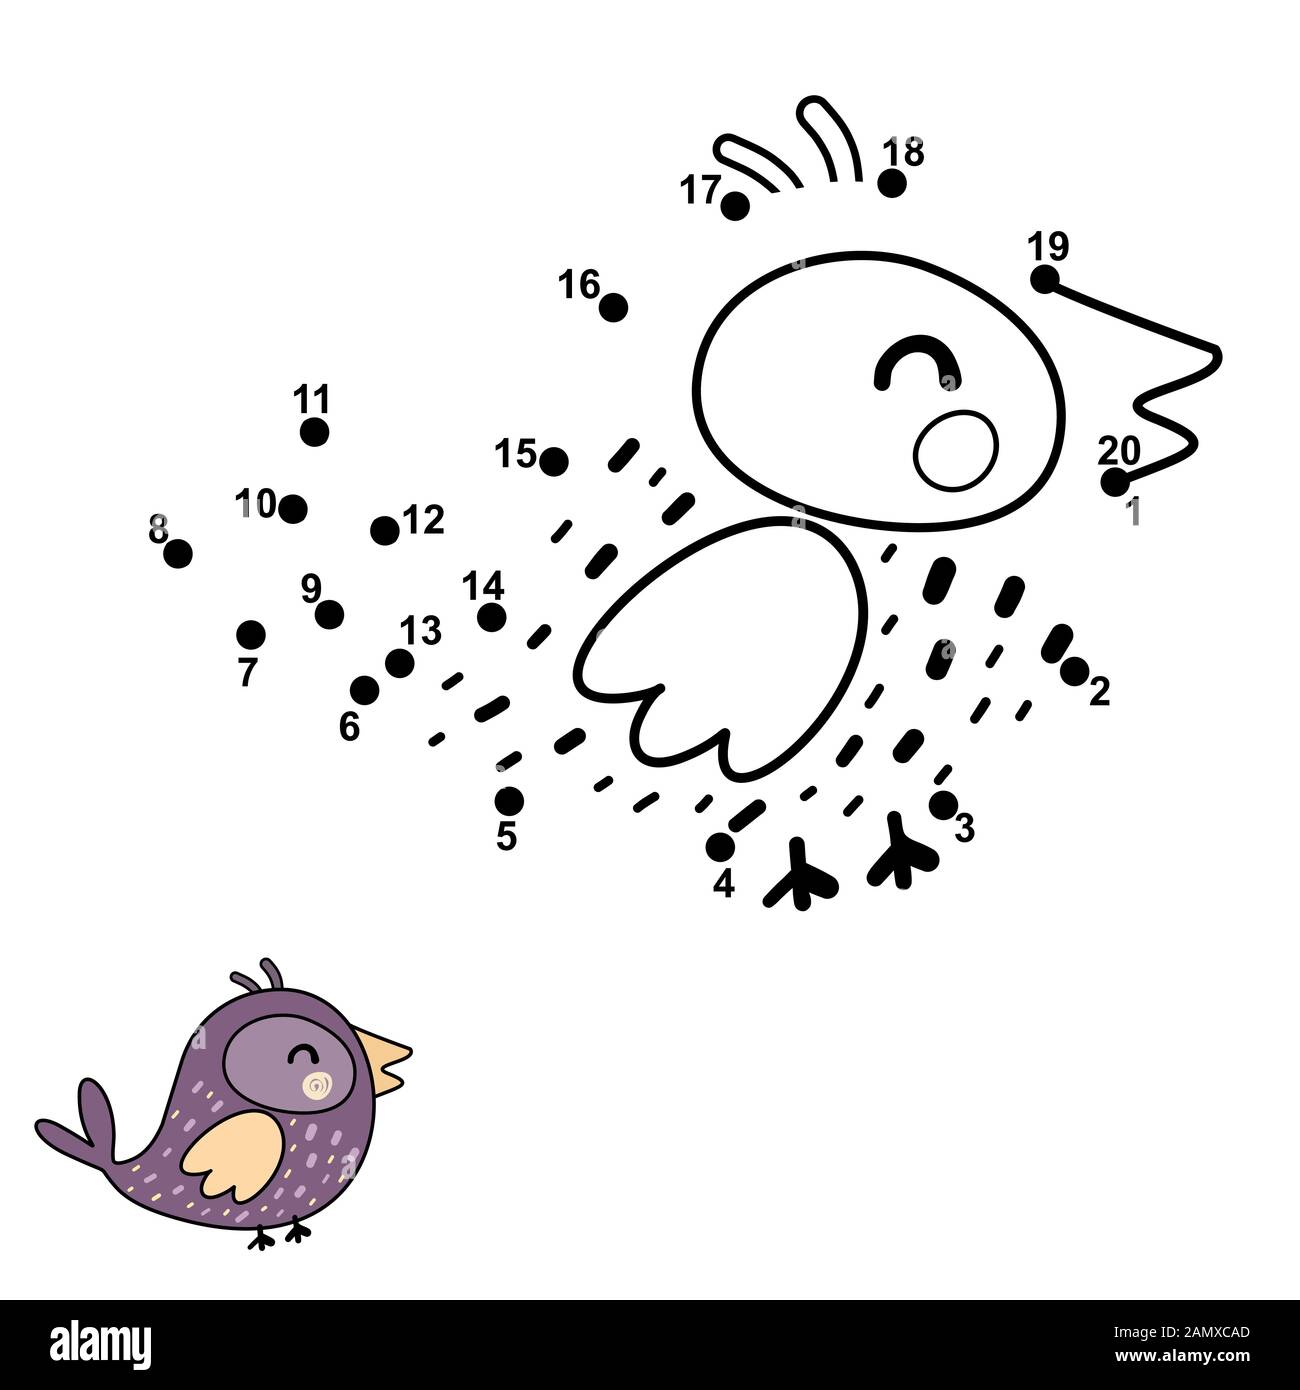 Connectez les points, dessinez et colorez un oiseau drôle Illustration de Vecteur